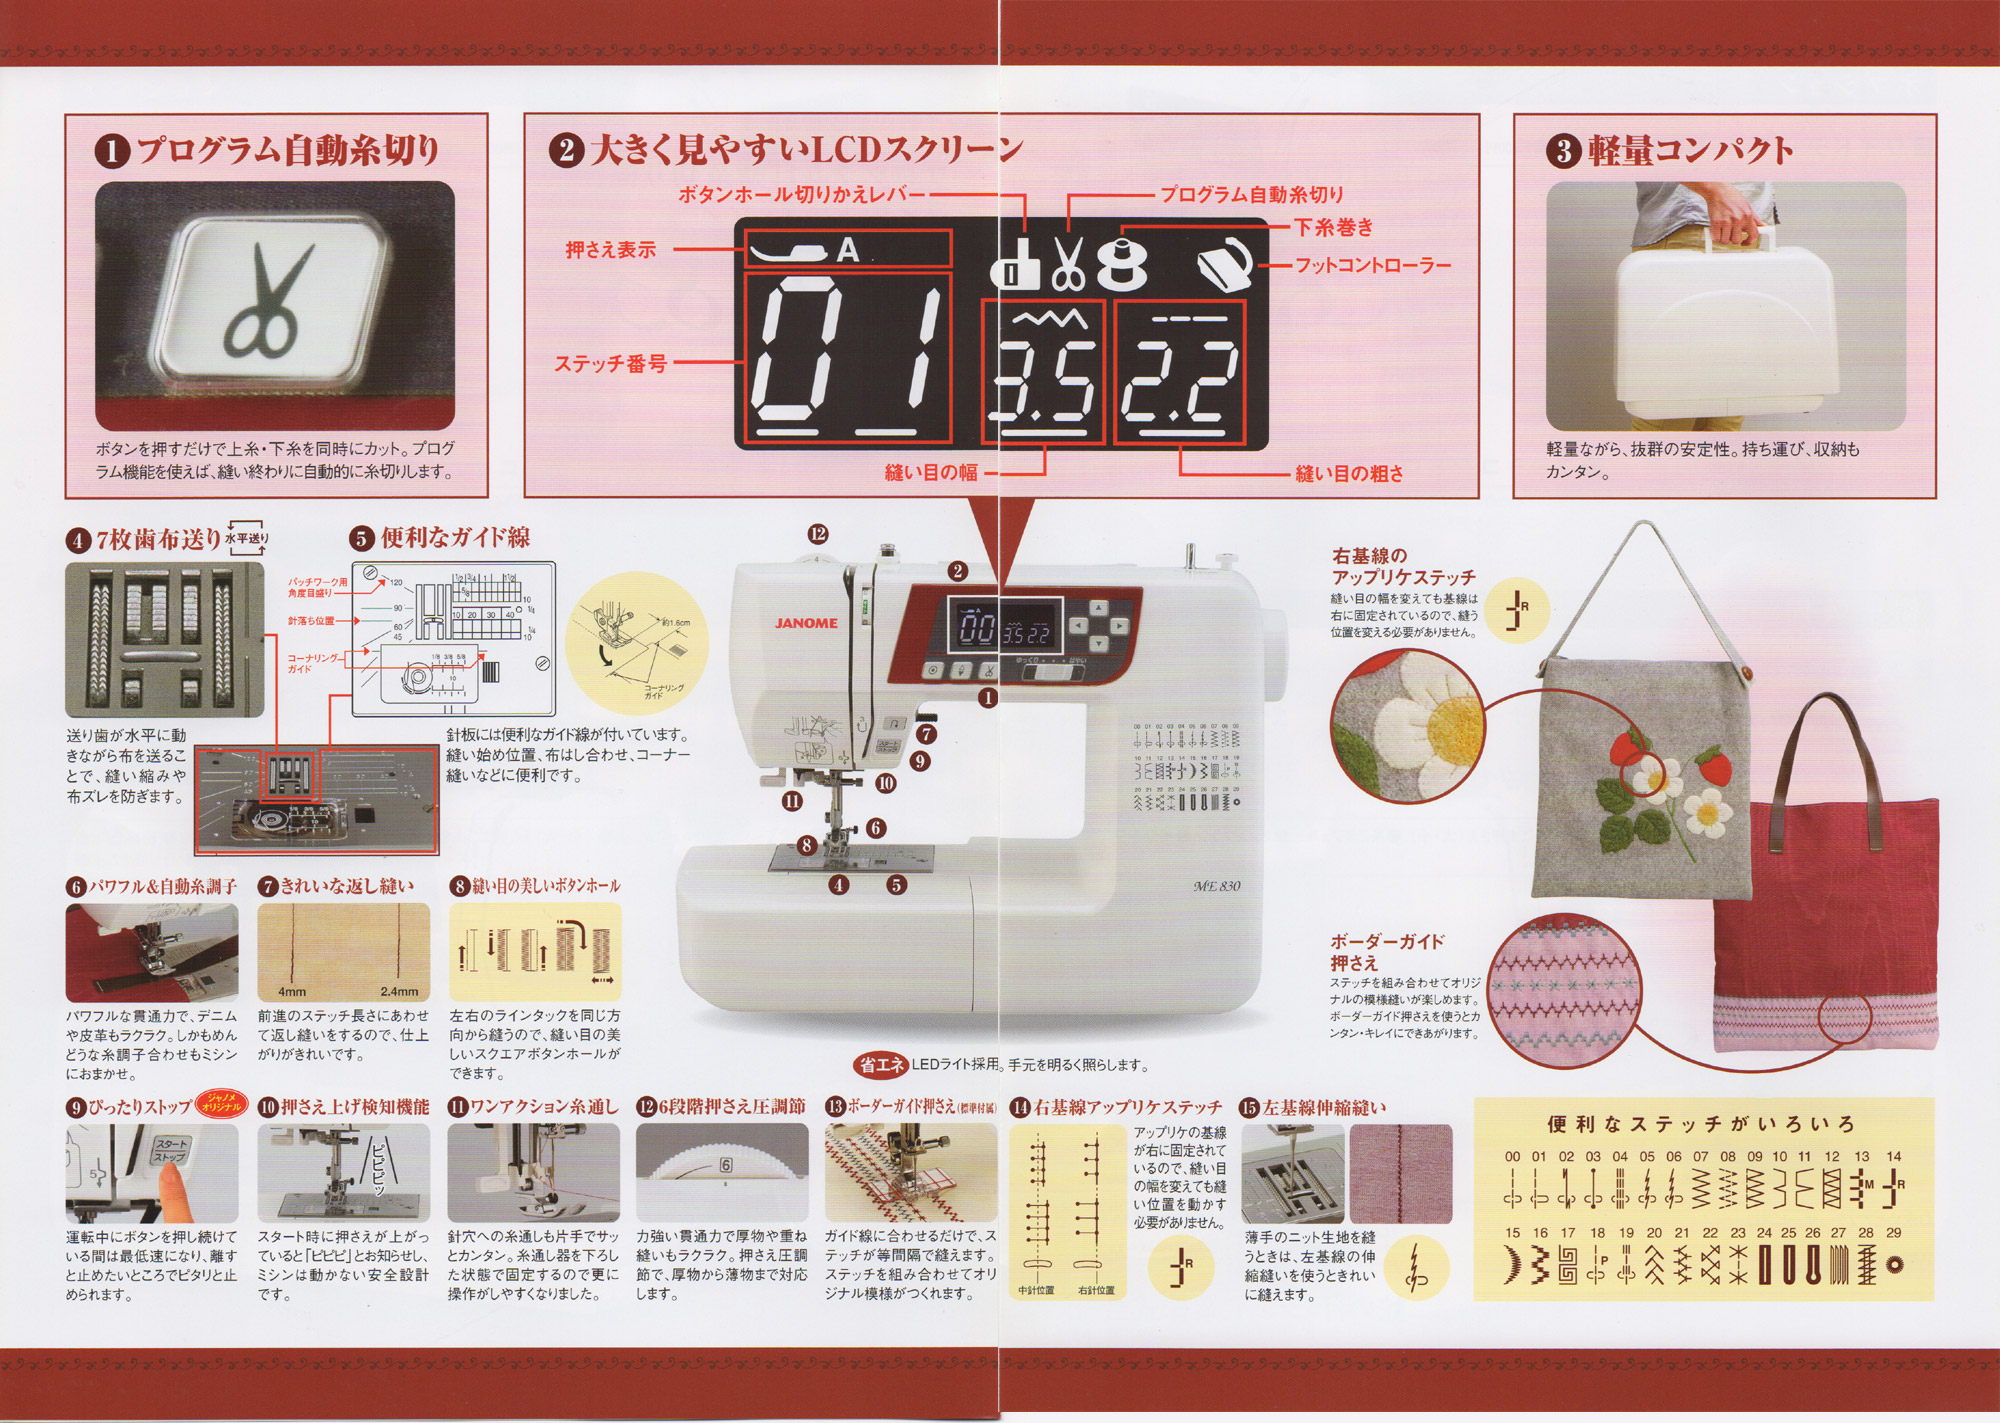 ジャノメコンピューターミシンME830☆激安特価で販売中！